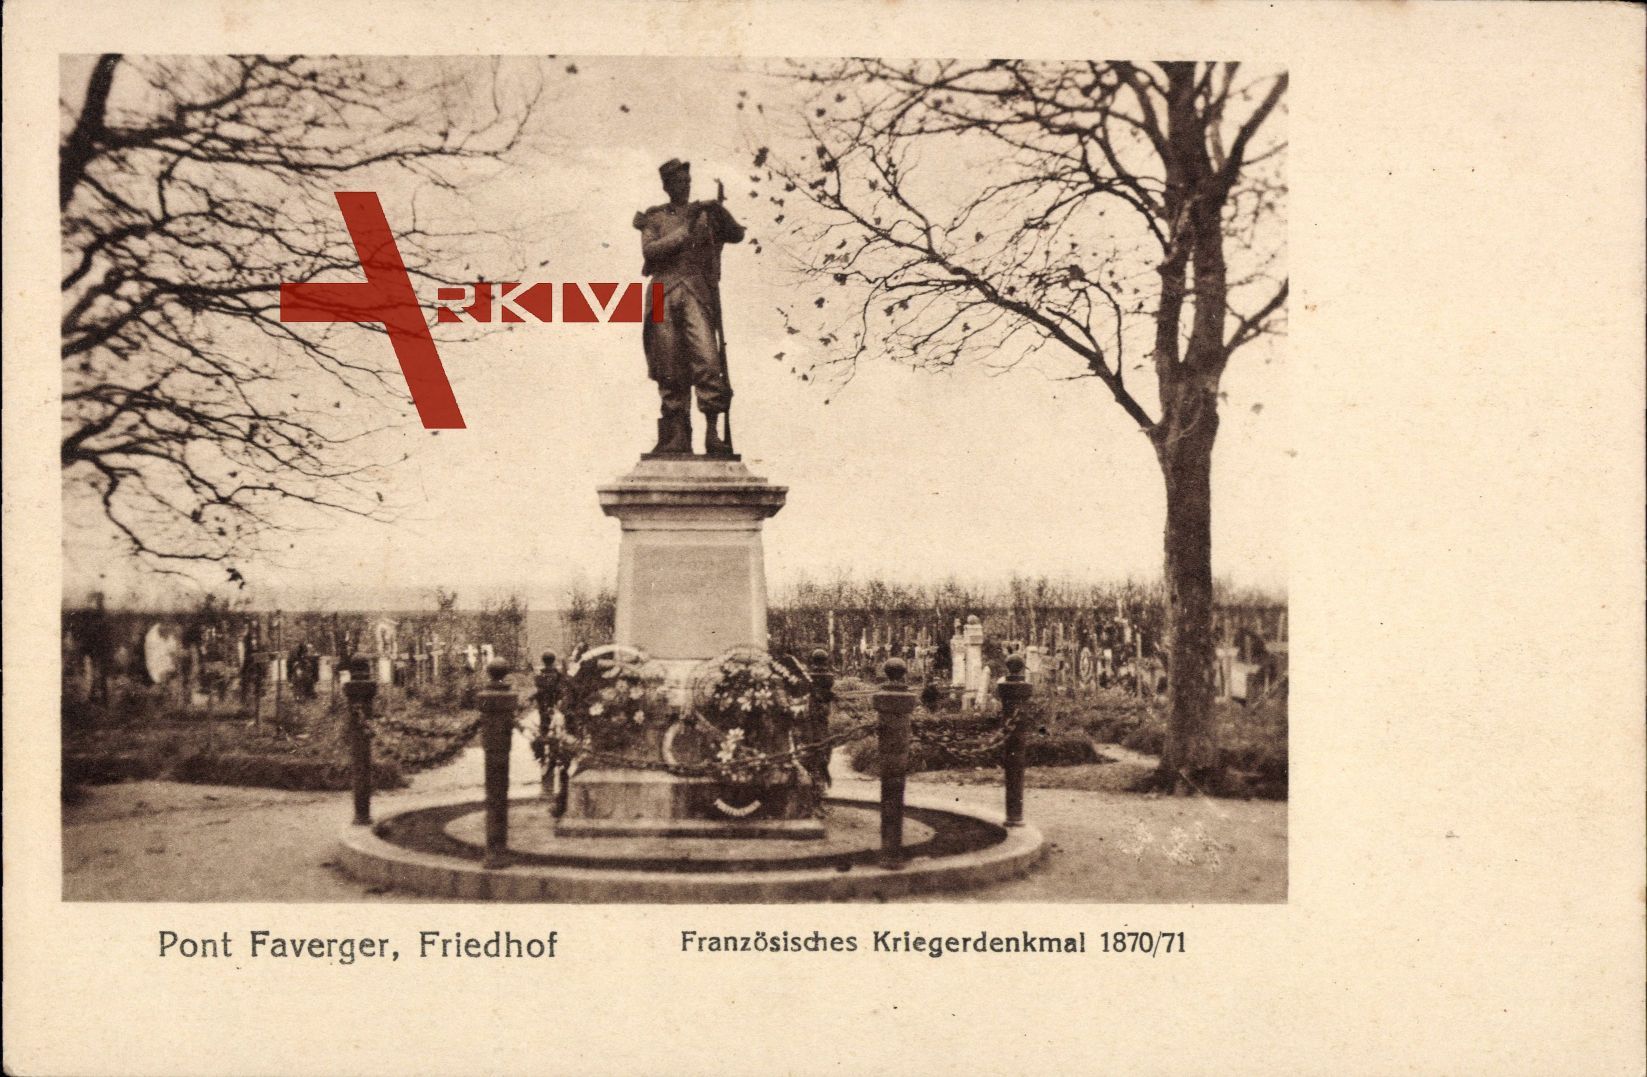 Pont Faverger Marne, Friedhof, Französisches Kriegerdenkmal 1870